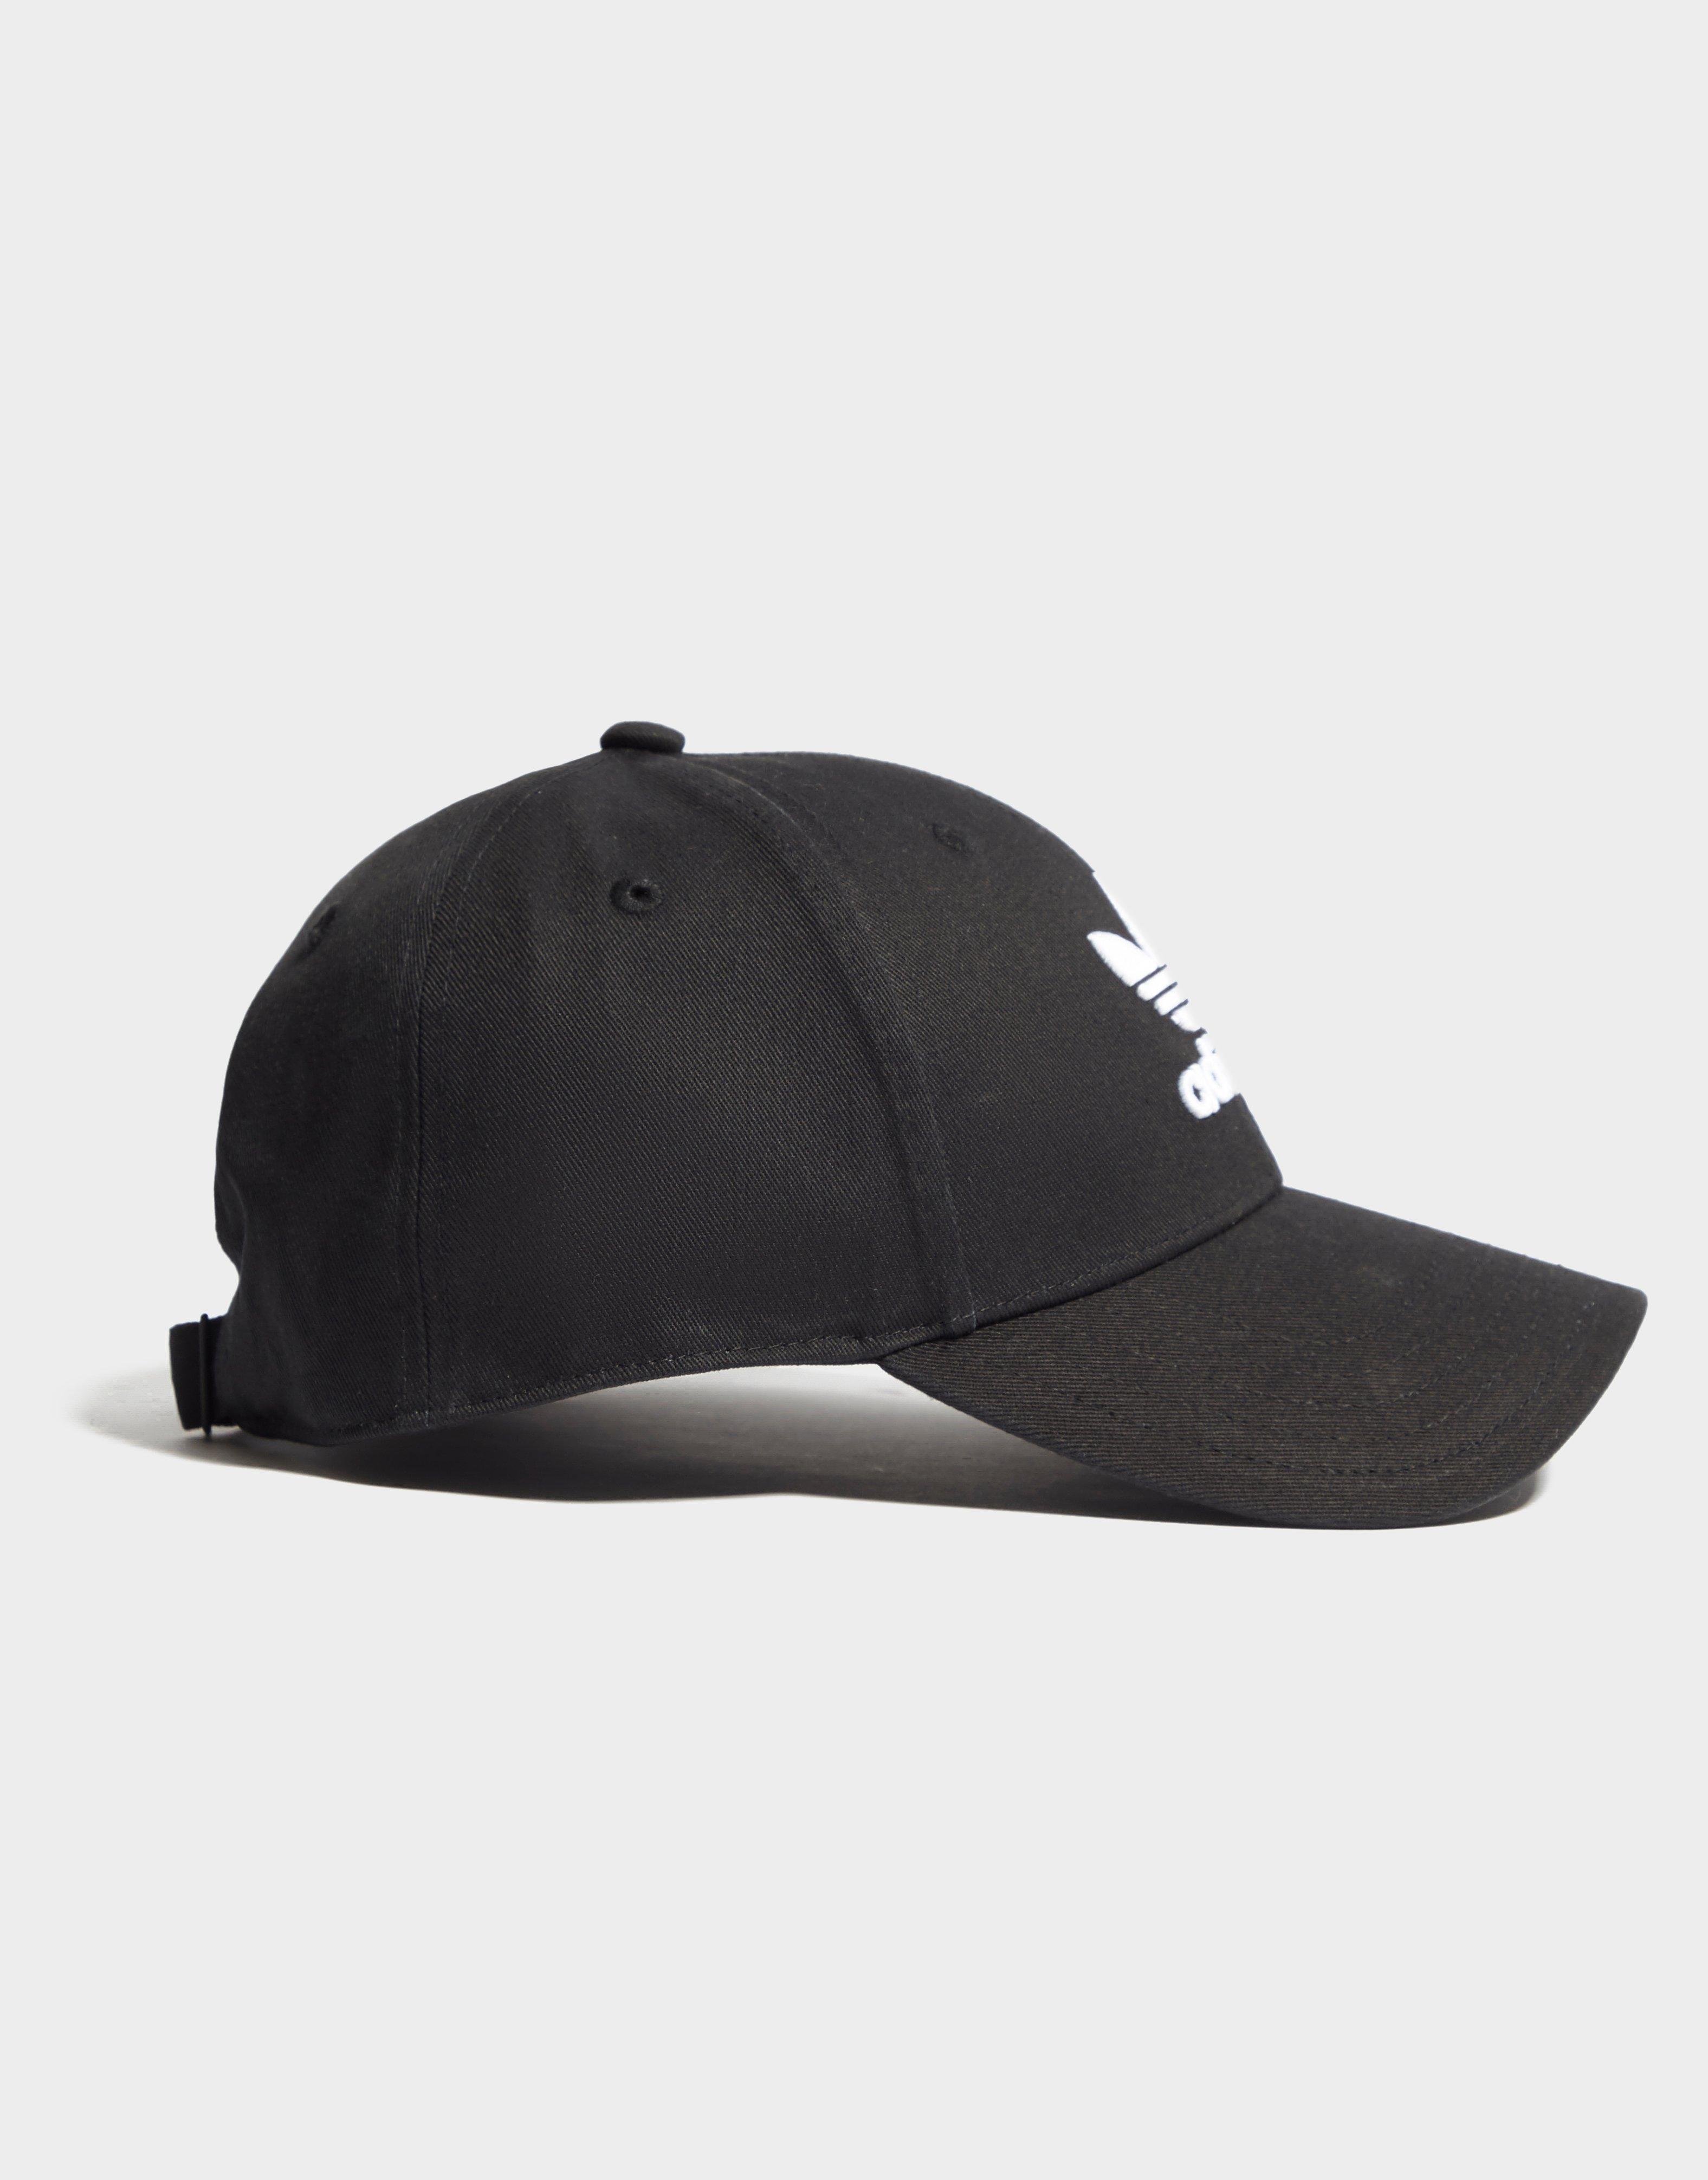 adidas trefoil cap black